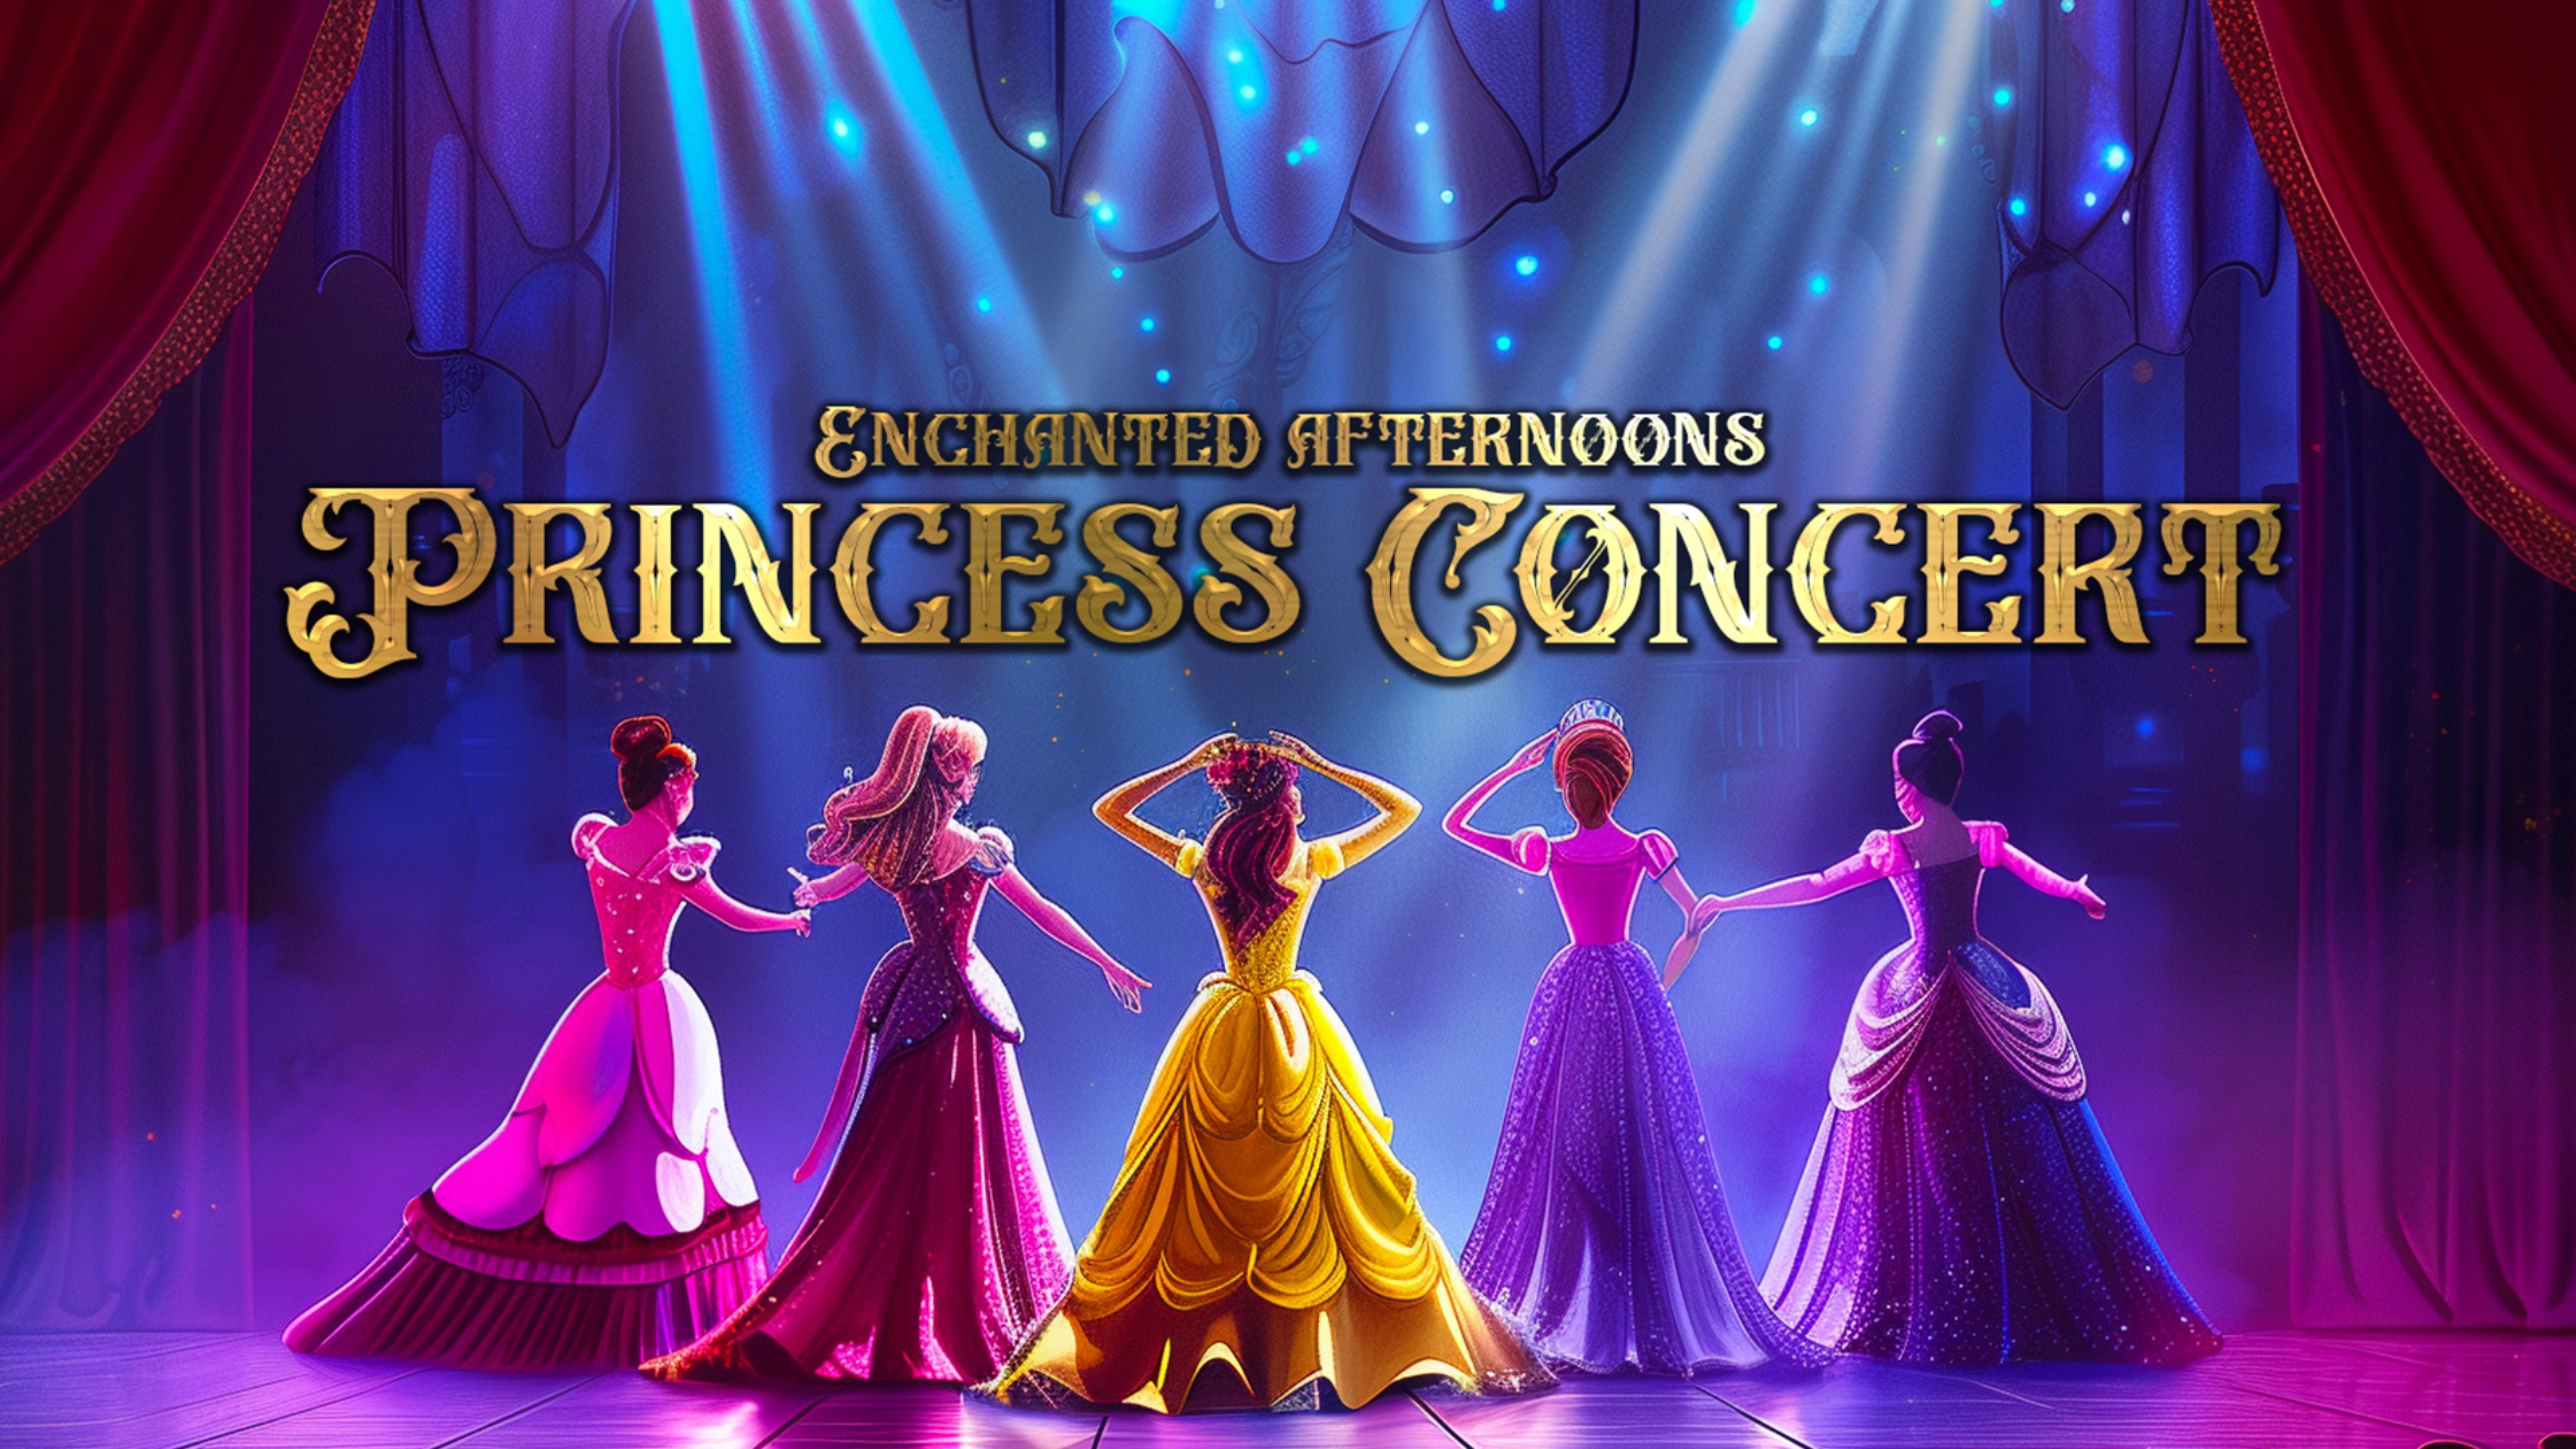 The Princess Concert